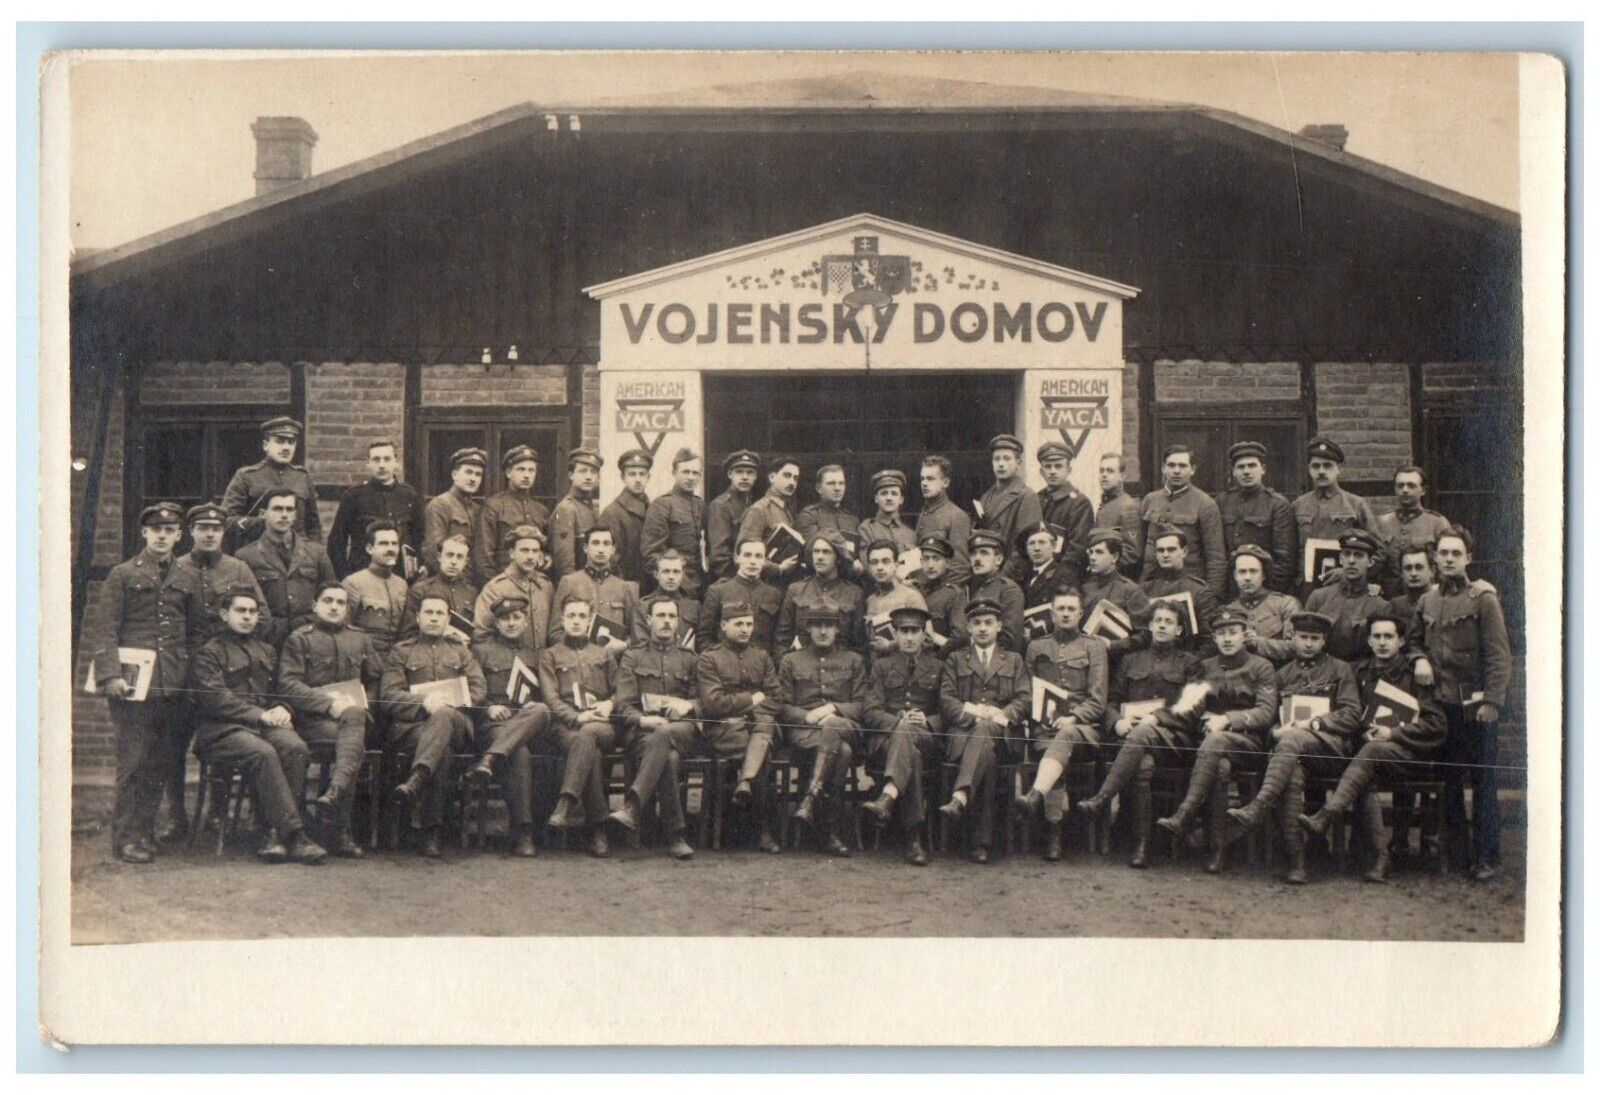 WWI Vojensky Domov American YMCA Czech Soldiers Military RPPC Photo Postcard